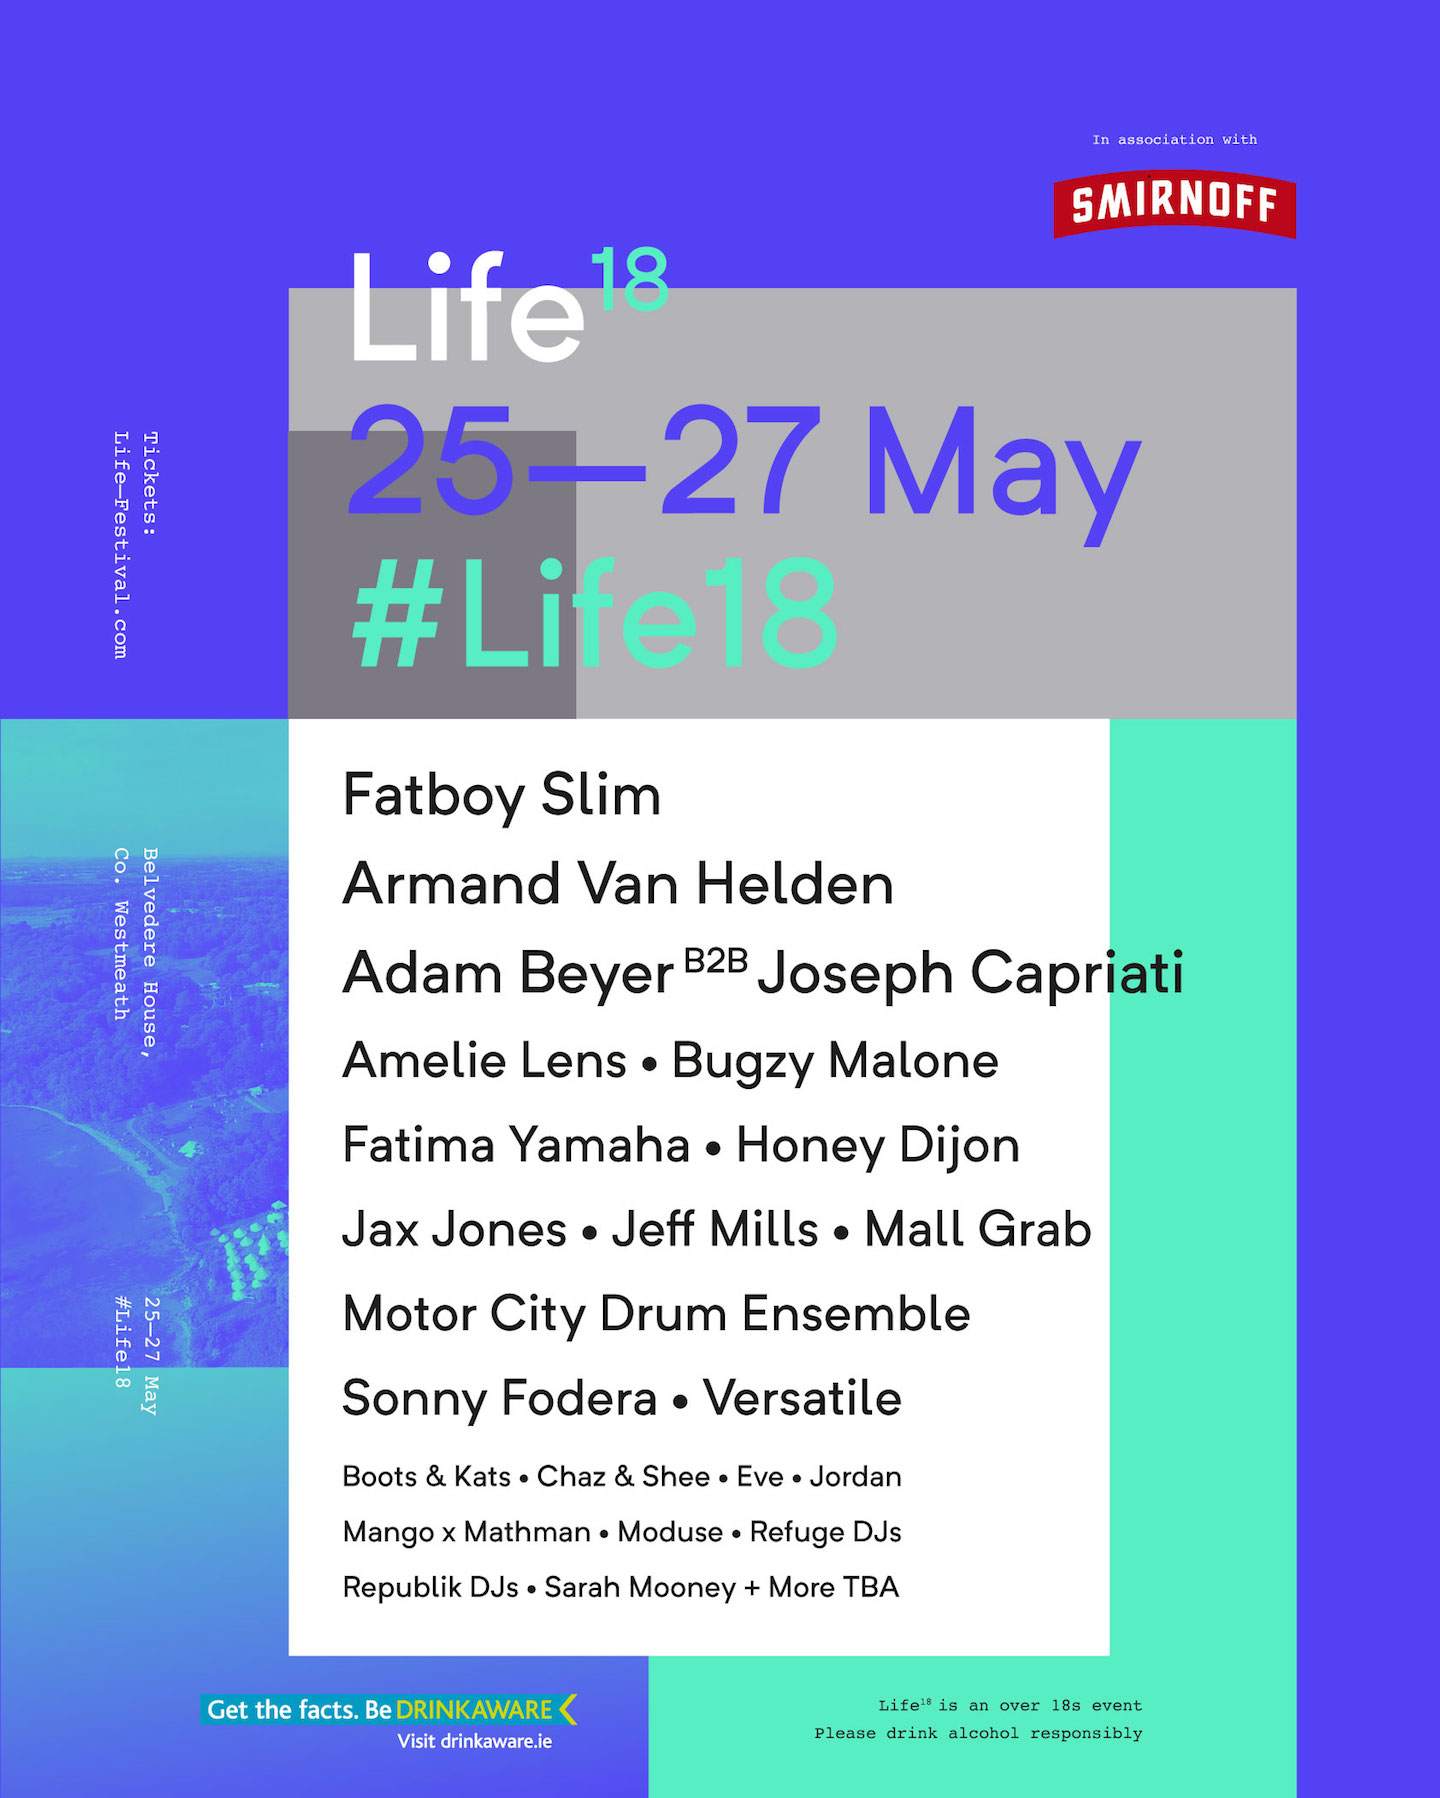 Life Festival adds Jeff Mills, Honey Dijon, MCDE for 2018 image